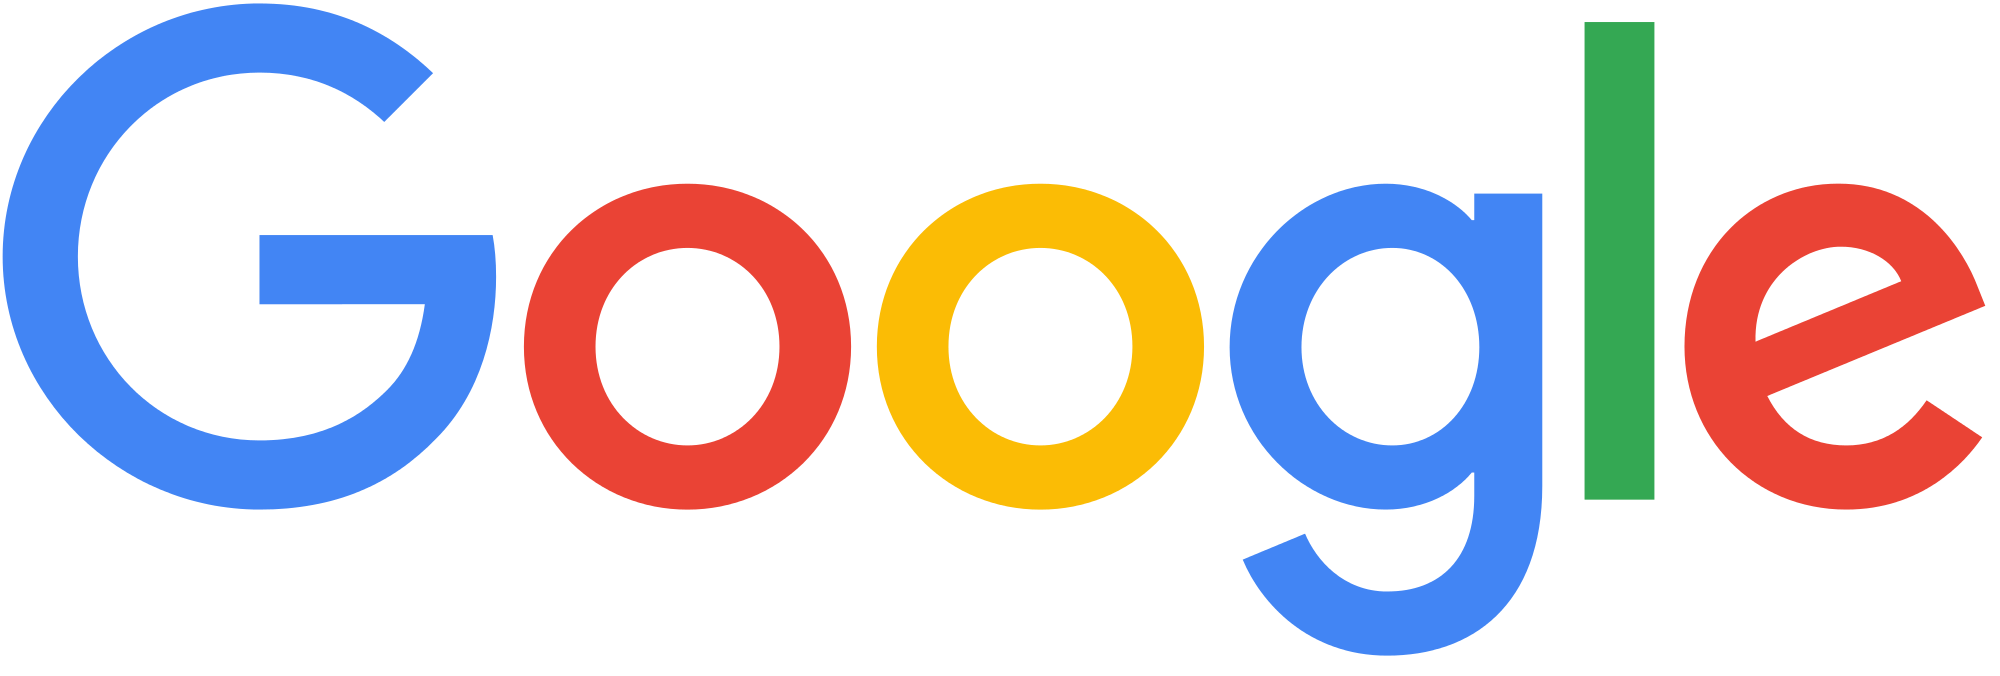 Google logo png. Transparent stickpng download